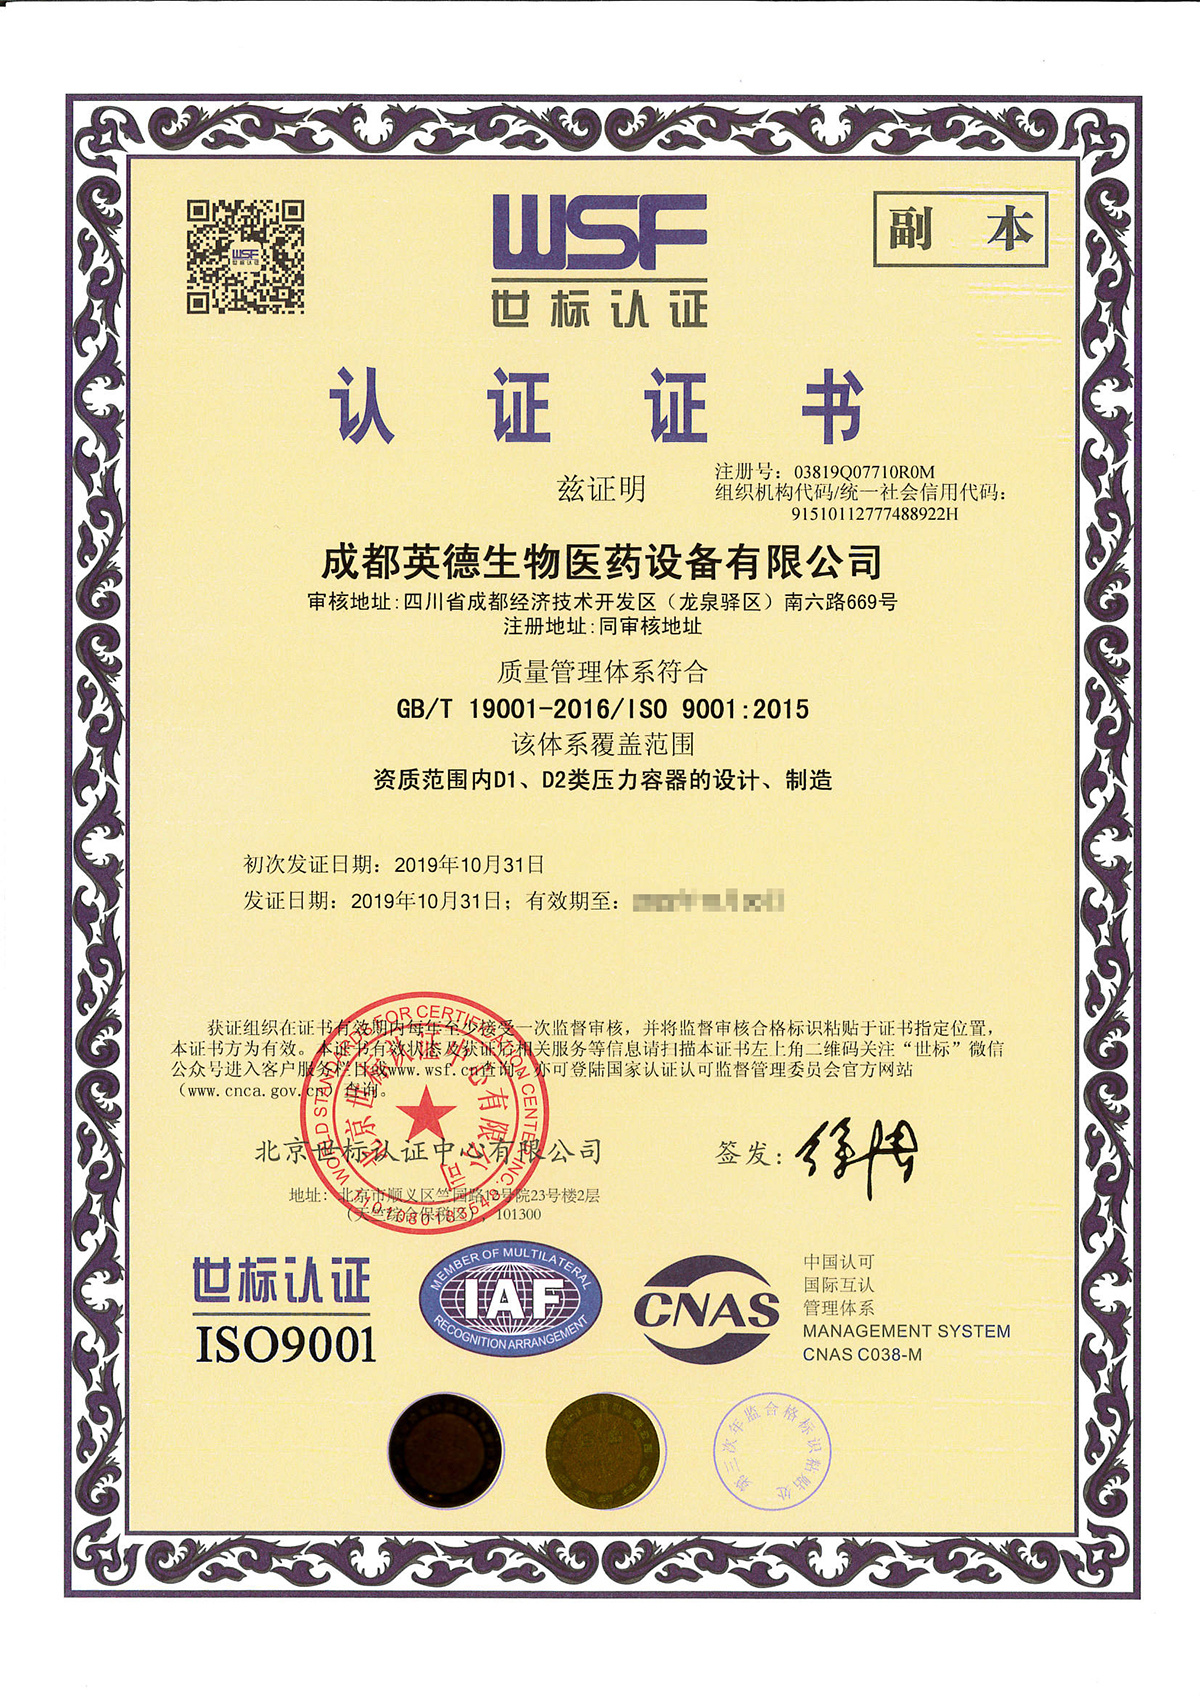 Система управления качеством IS09001 сертифицирована